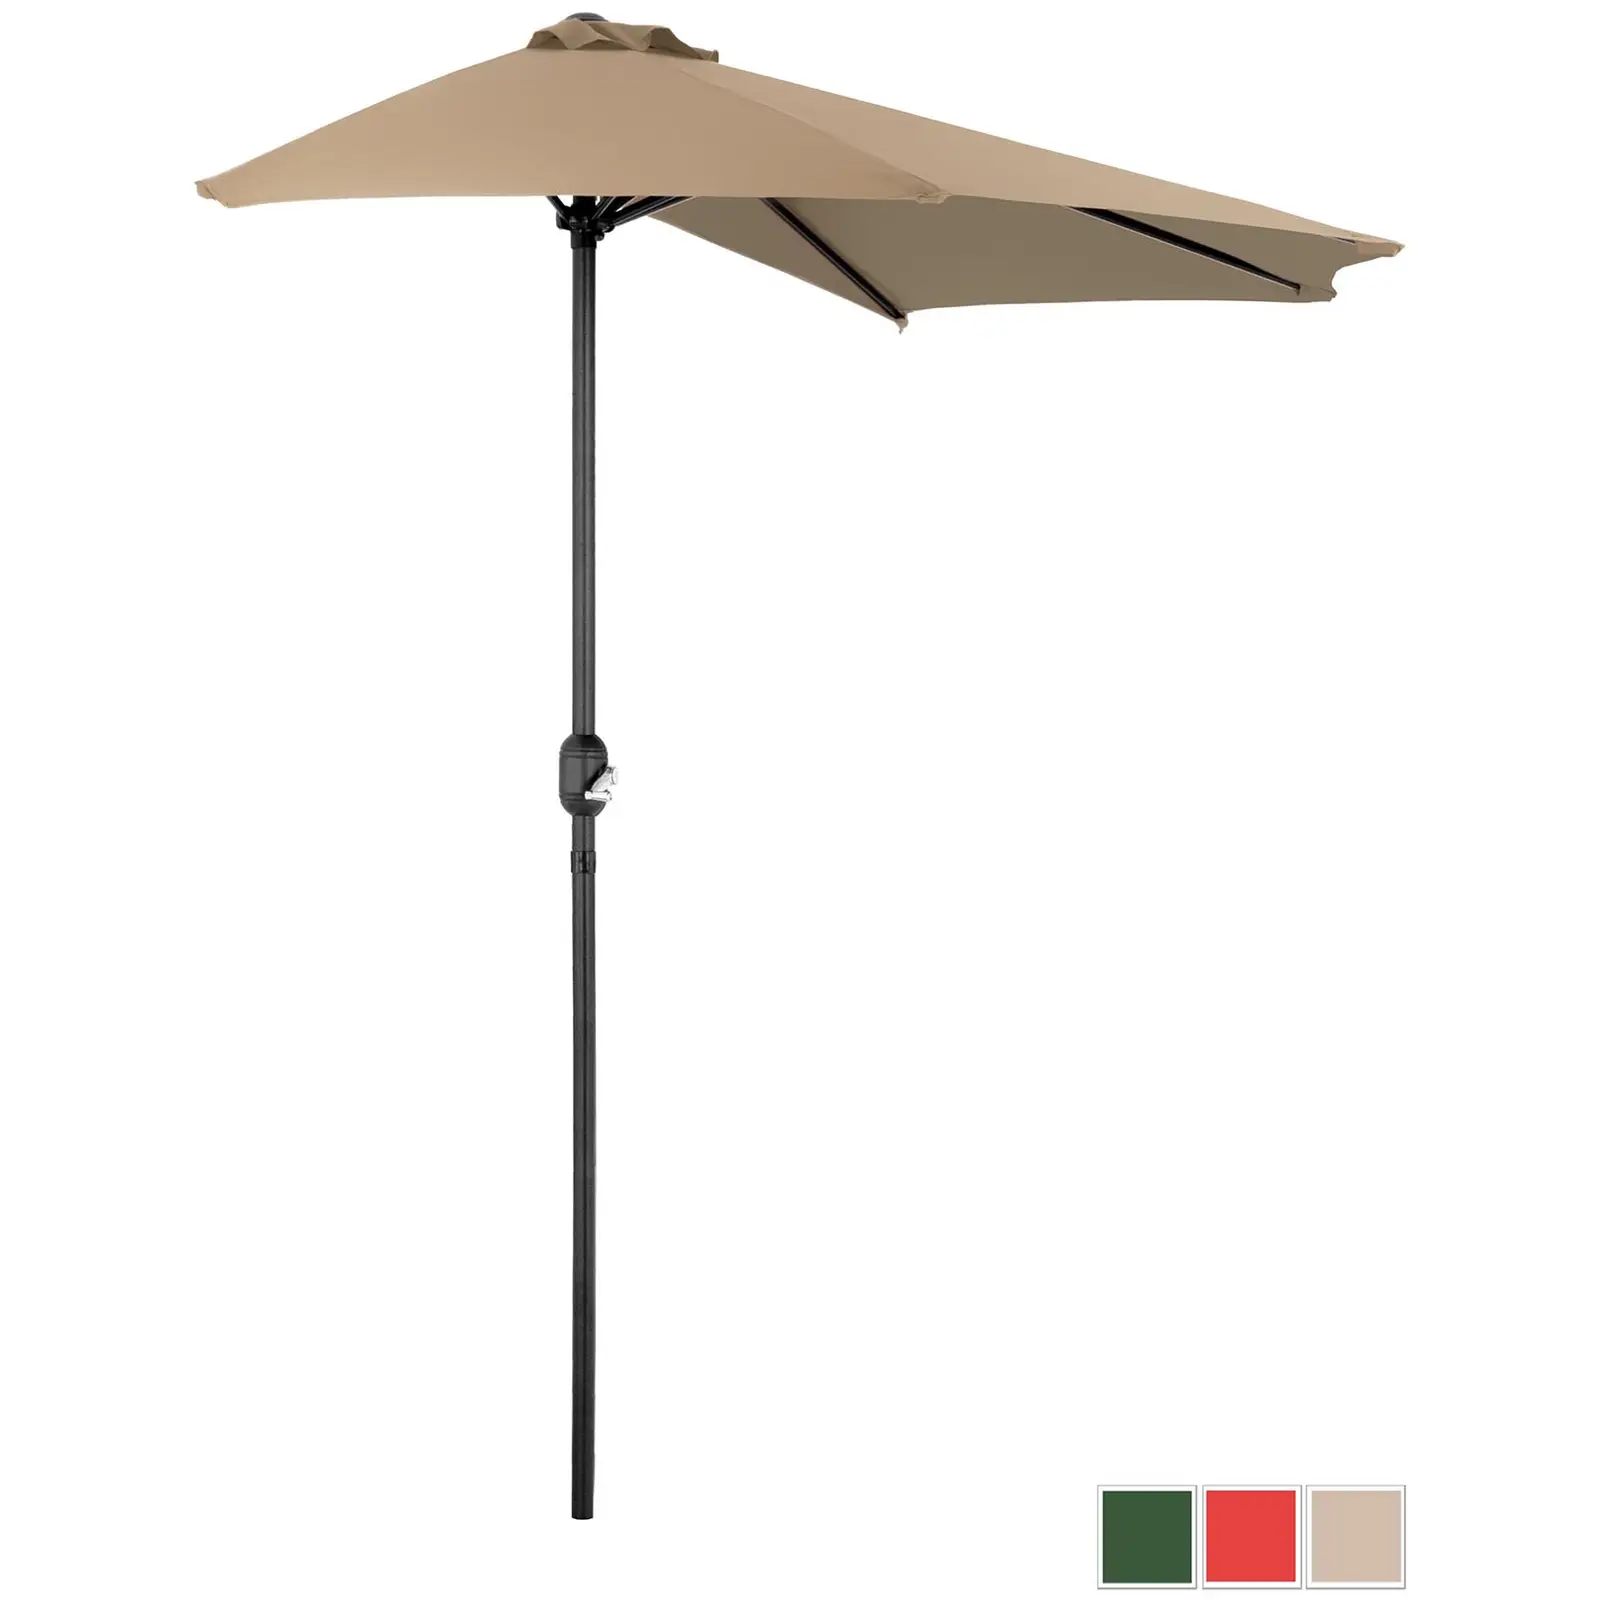 Aurinkovarjo puolikas - kermanvärinen - viisikulmainen - 270 x 135 cm